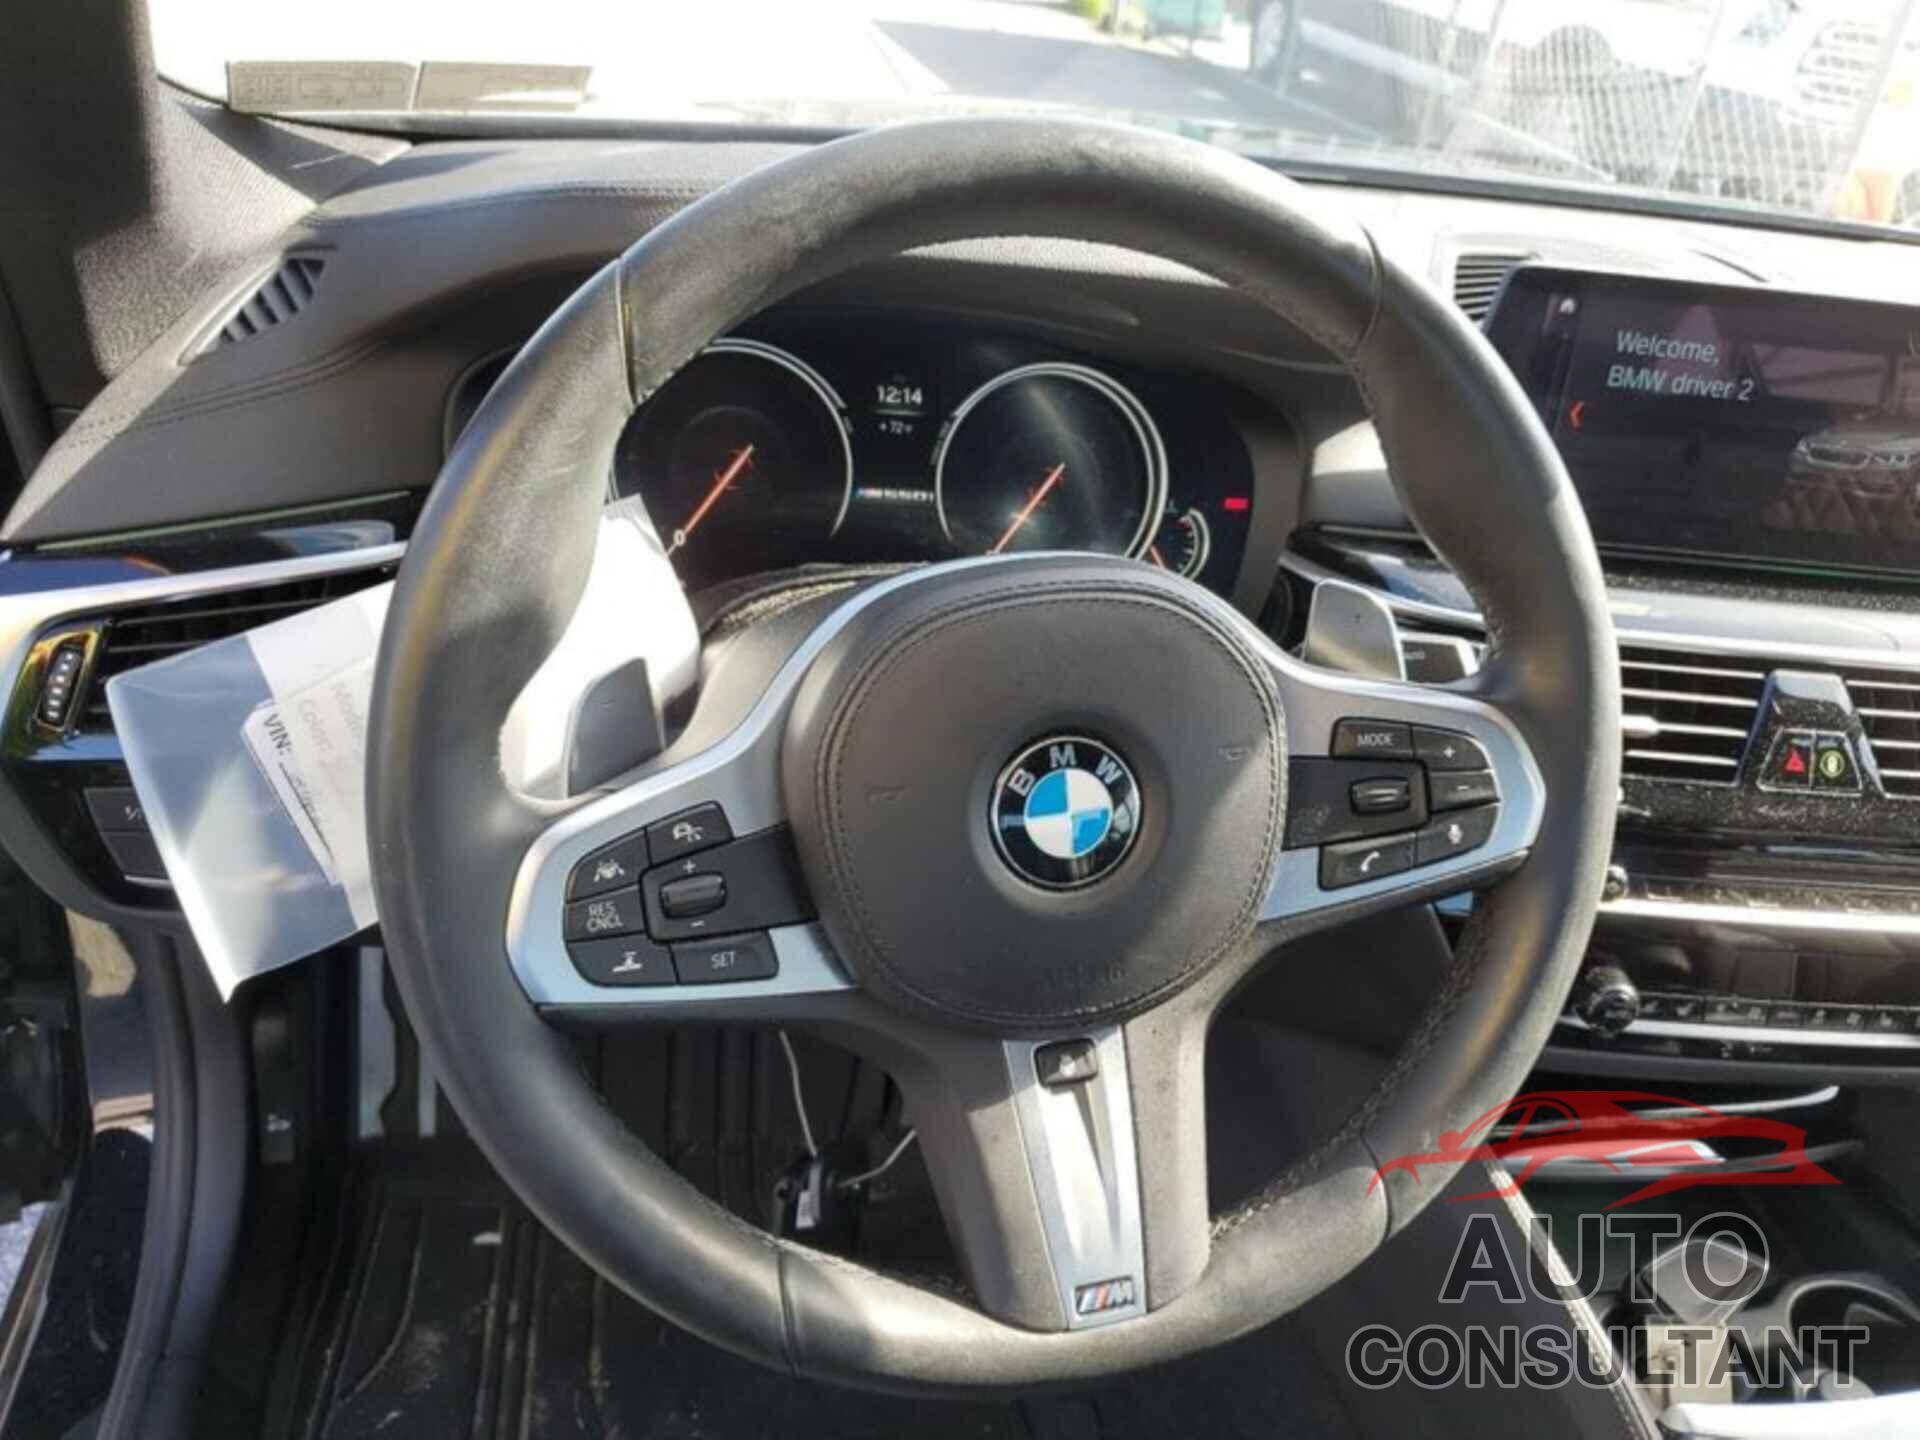 BMW 5 SERIES 2018 - WBAJB9C50JB286252